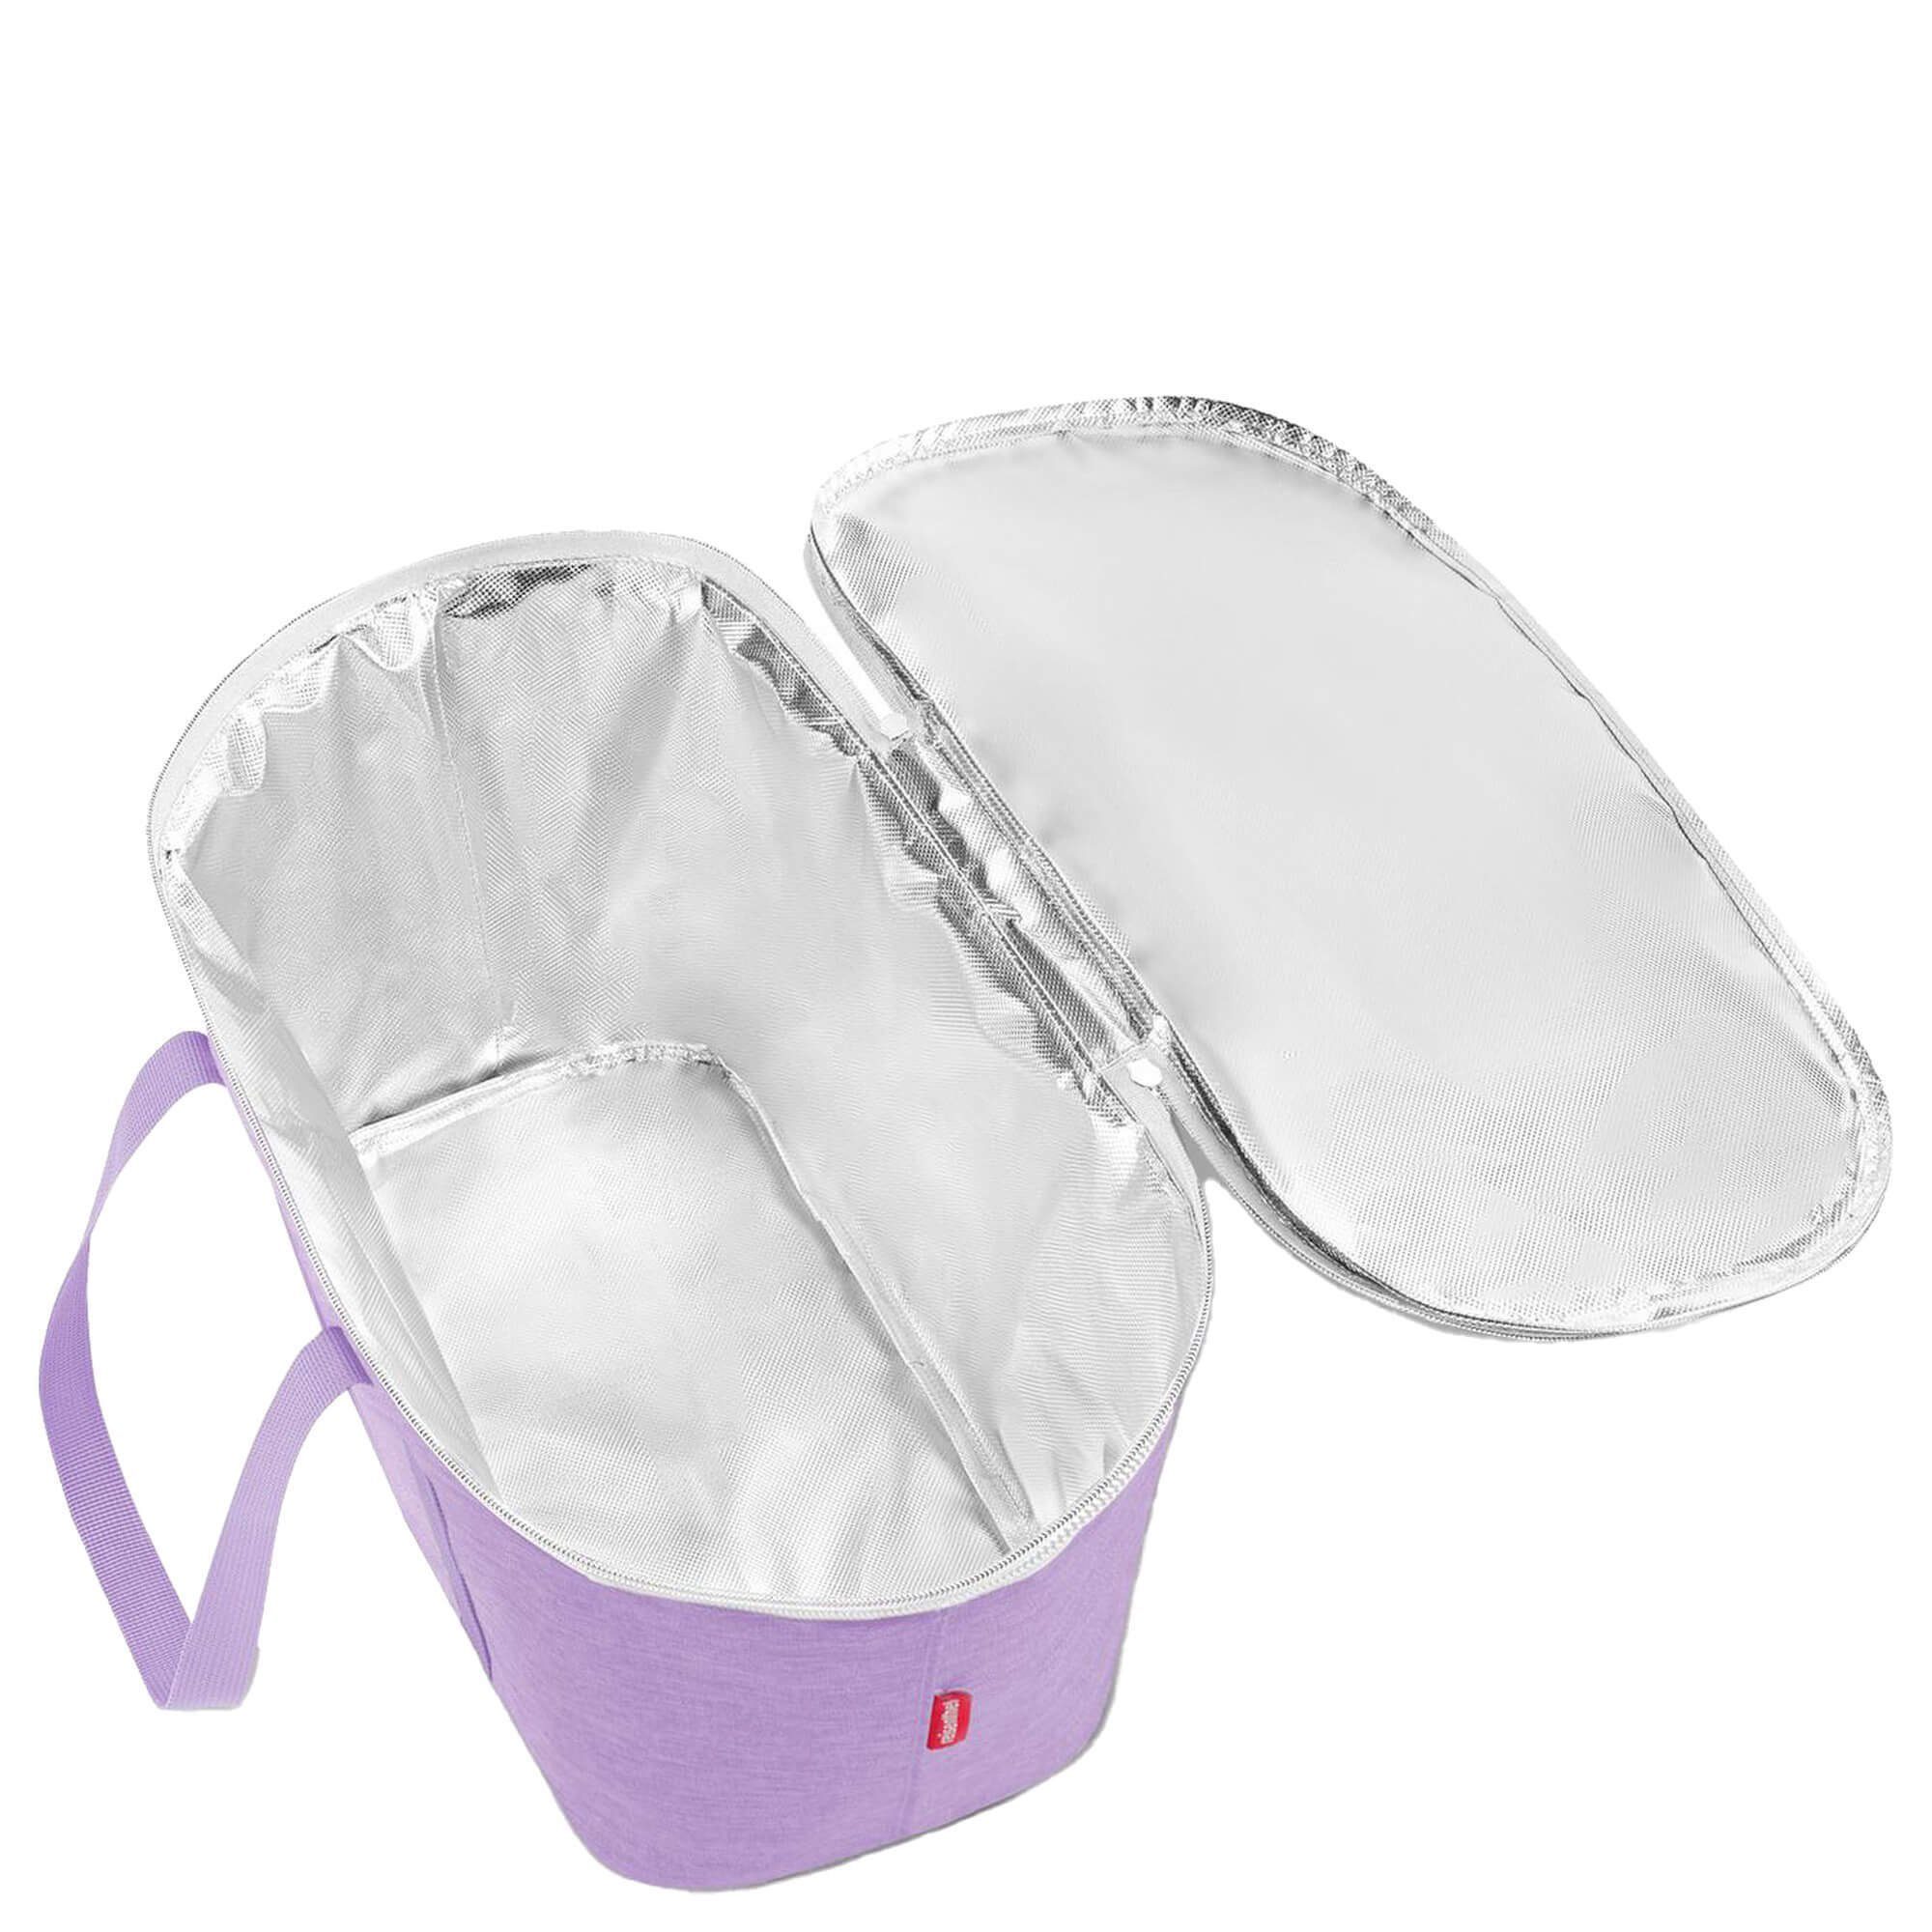 twist Kühltasche coolerbag REISENTHEL® 20 Einkaufsbeutel thermo - l violet cm, 44.5